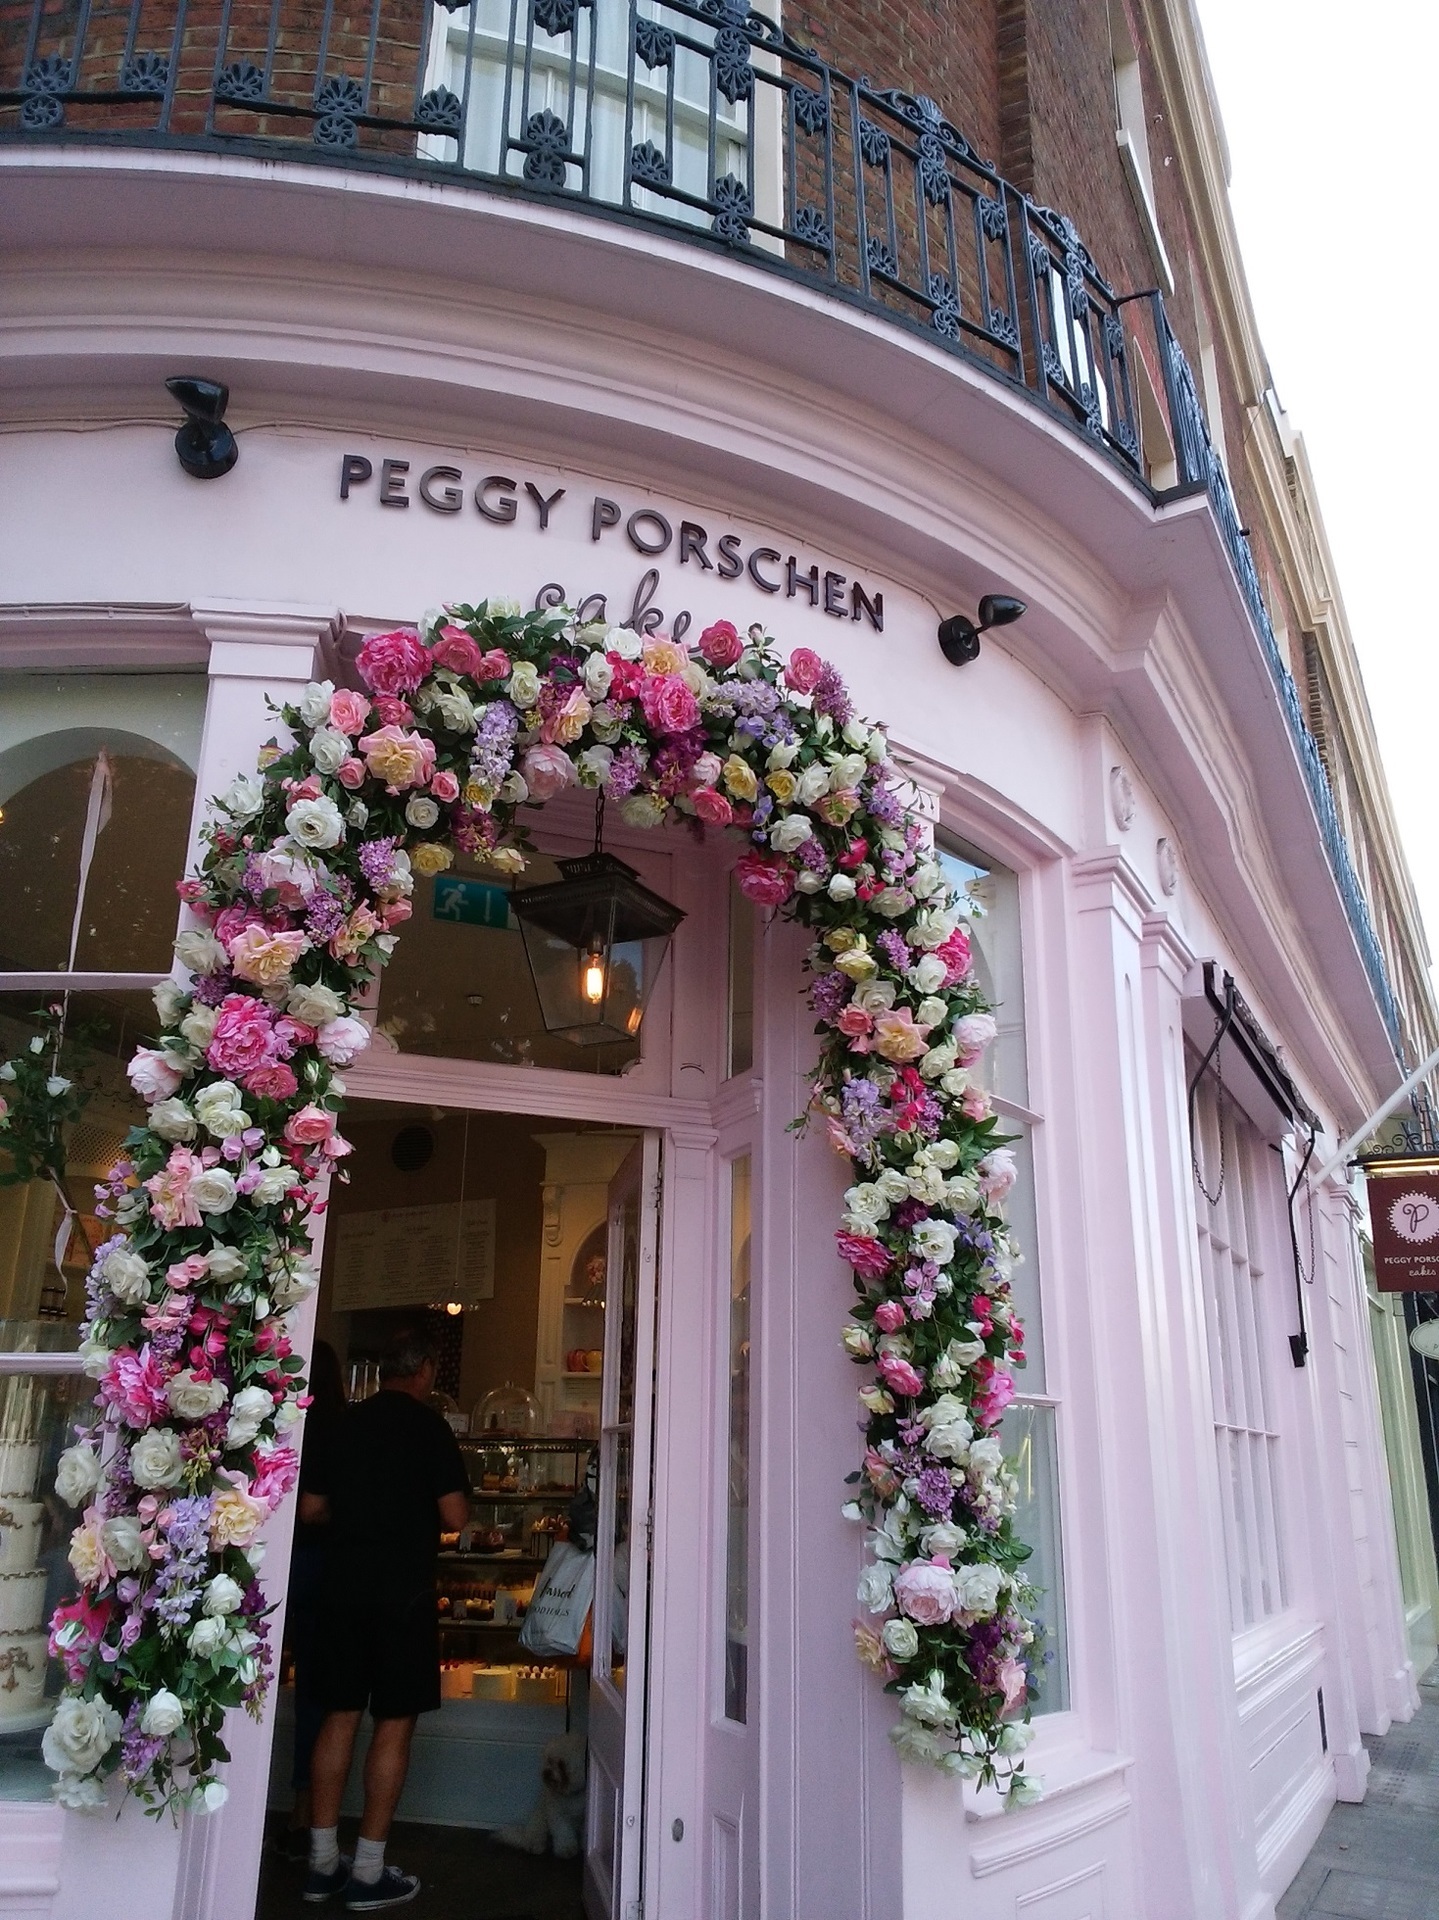 Peggy Porschen ペギー ポーション は ピンク基調でかわいらしさ全開のケーキ カップケーキ 屋さん イギリスの料理はまずいと誰が言った